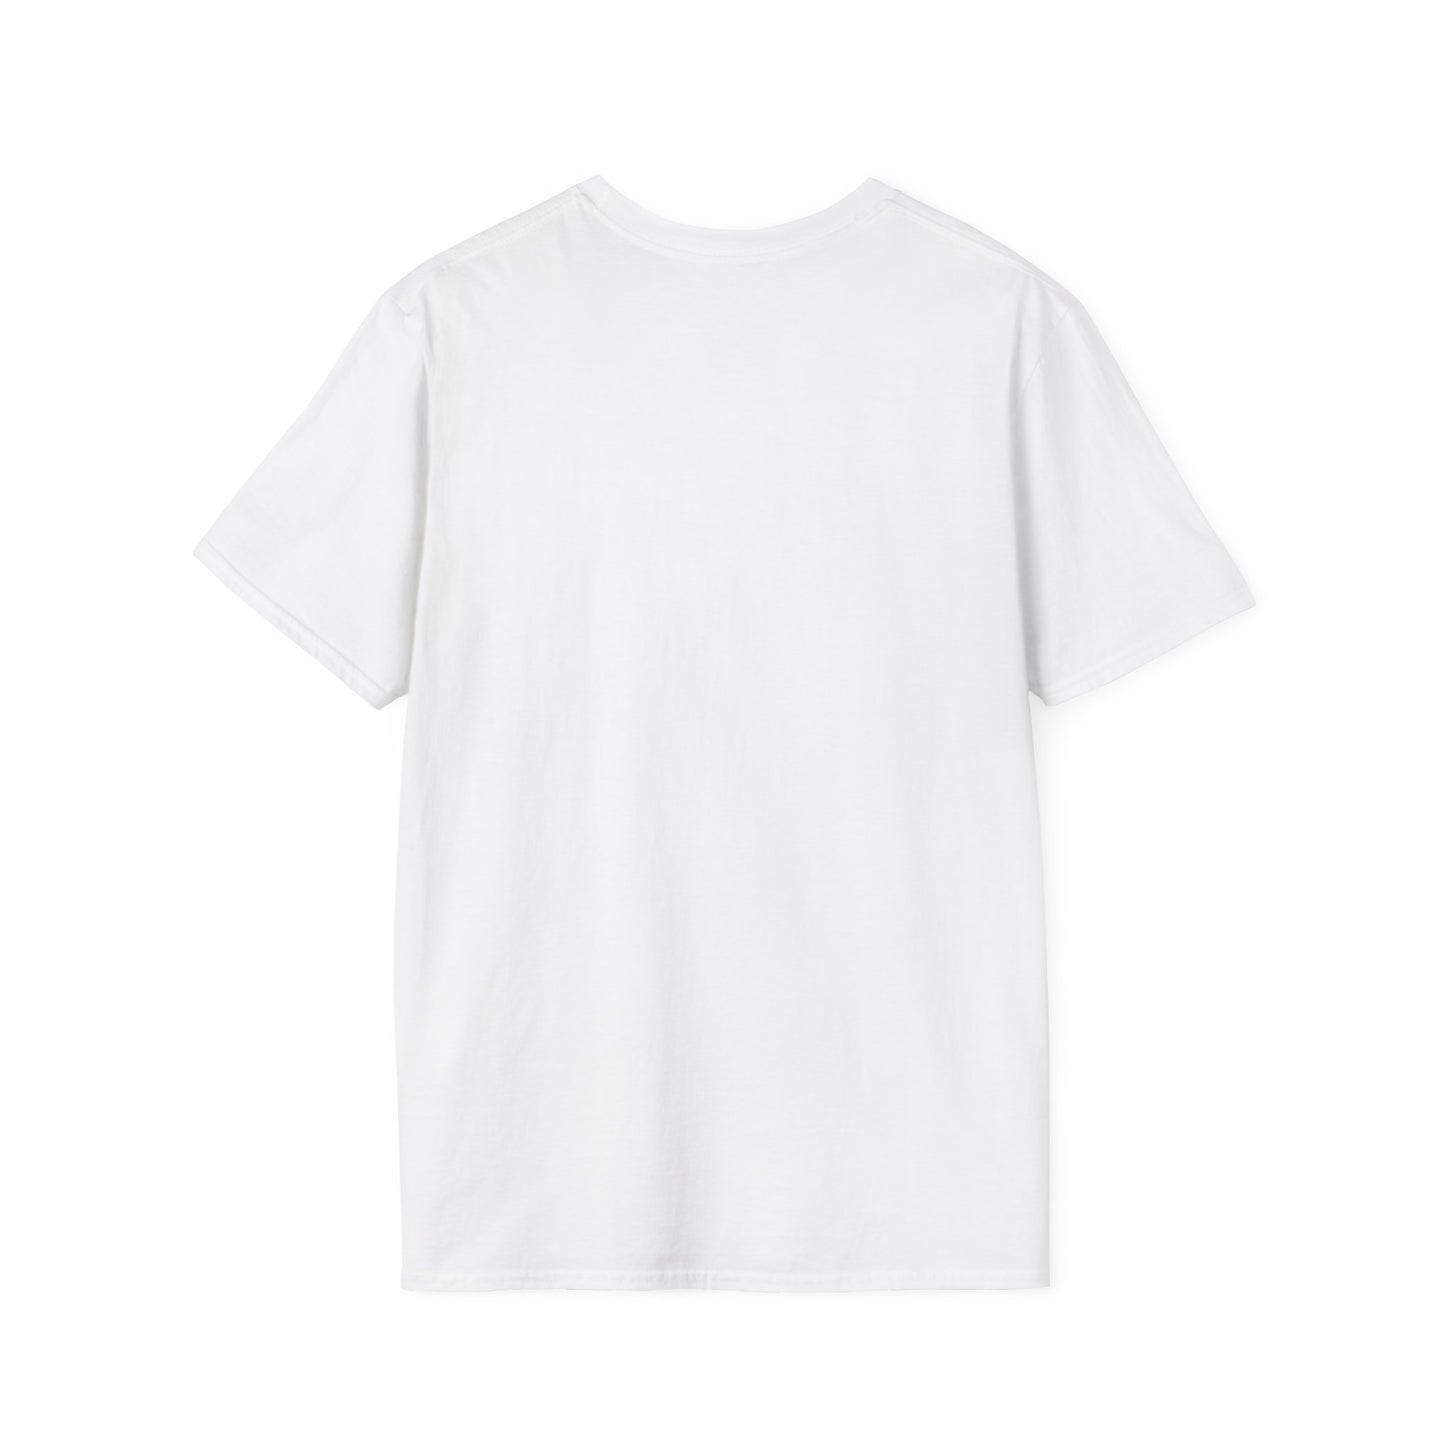 TG-14 Unisex Softstyle T-Shirt